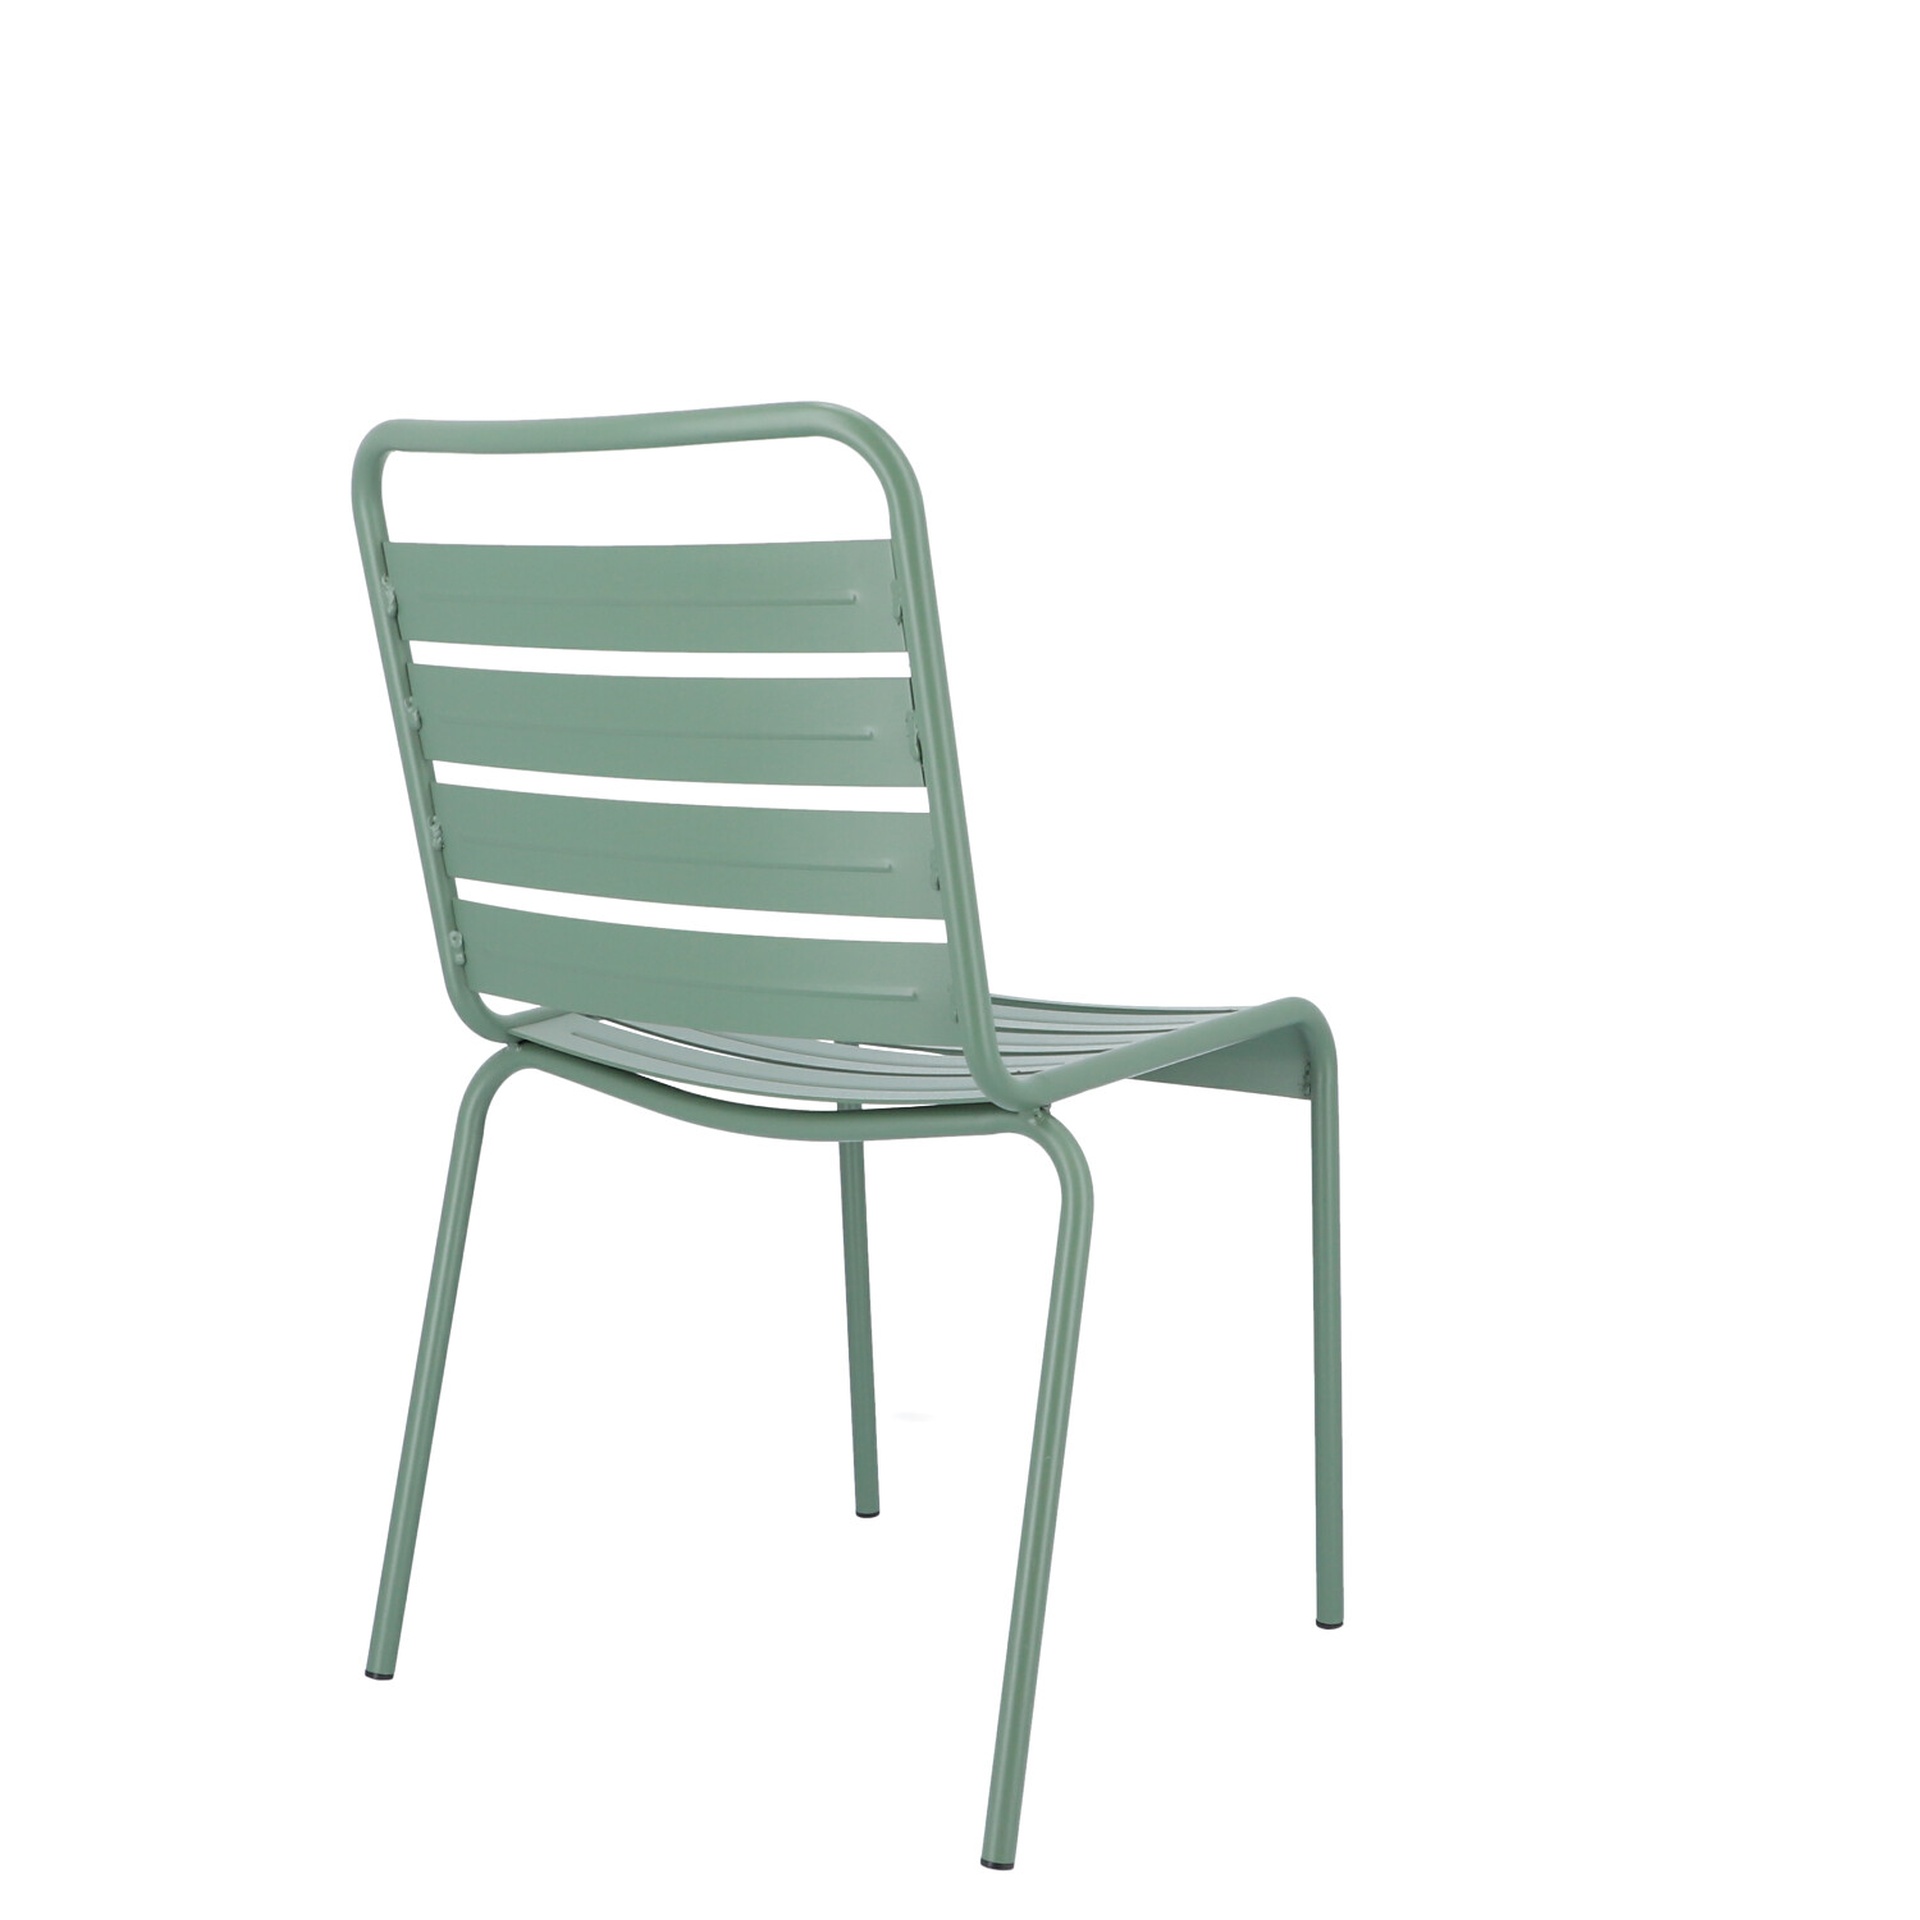 Der moderne Stapelstuhl Mya wurde aus Aluminium gefertigt und hat einen salbei Farbton. Designet wurde der Stuhl von der Marke Jan Kurtz.